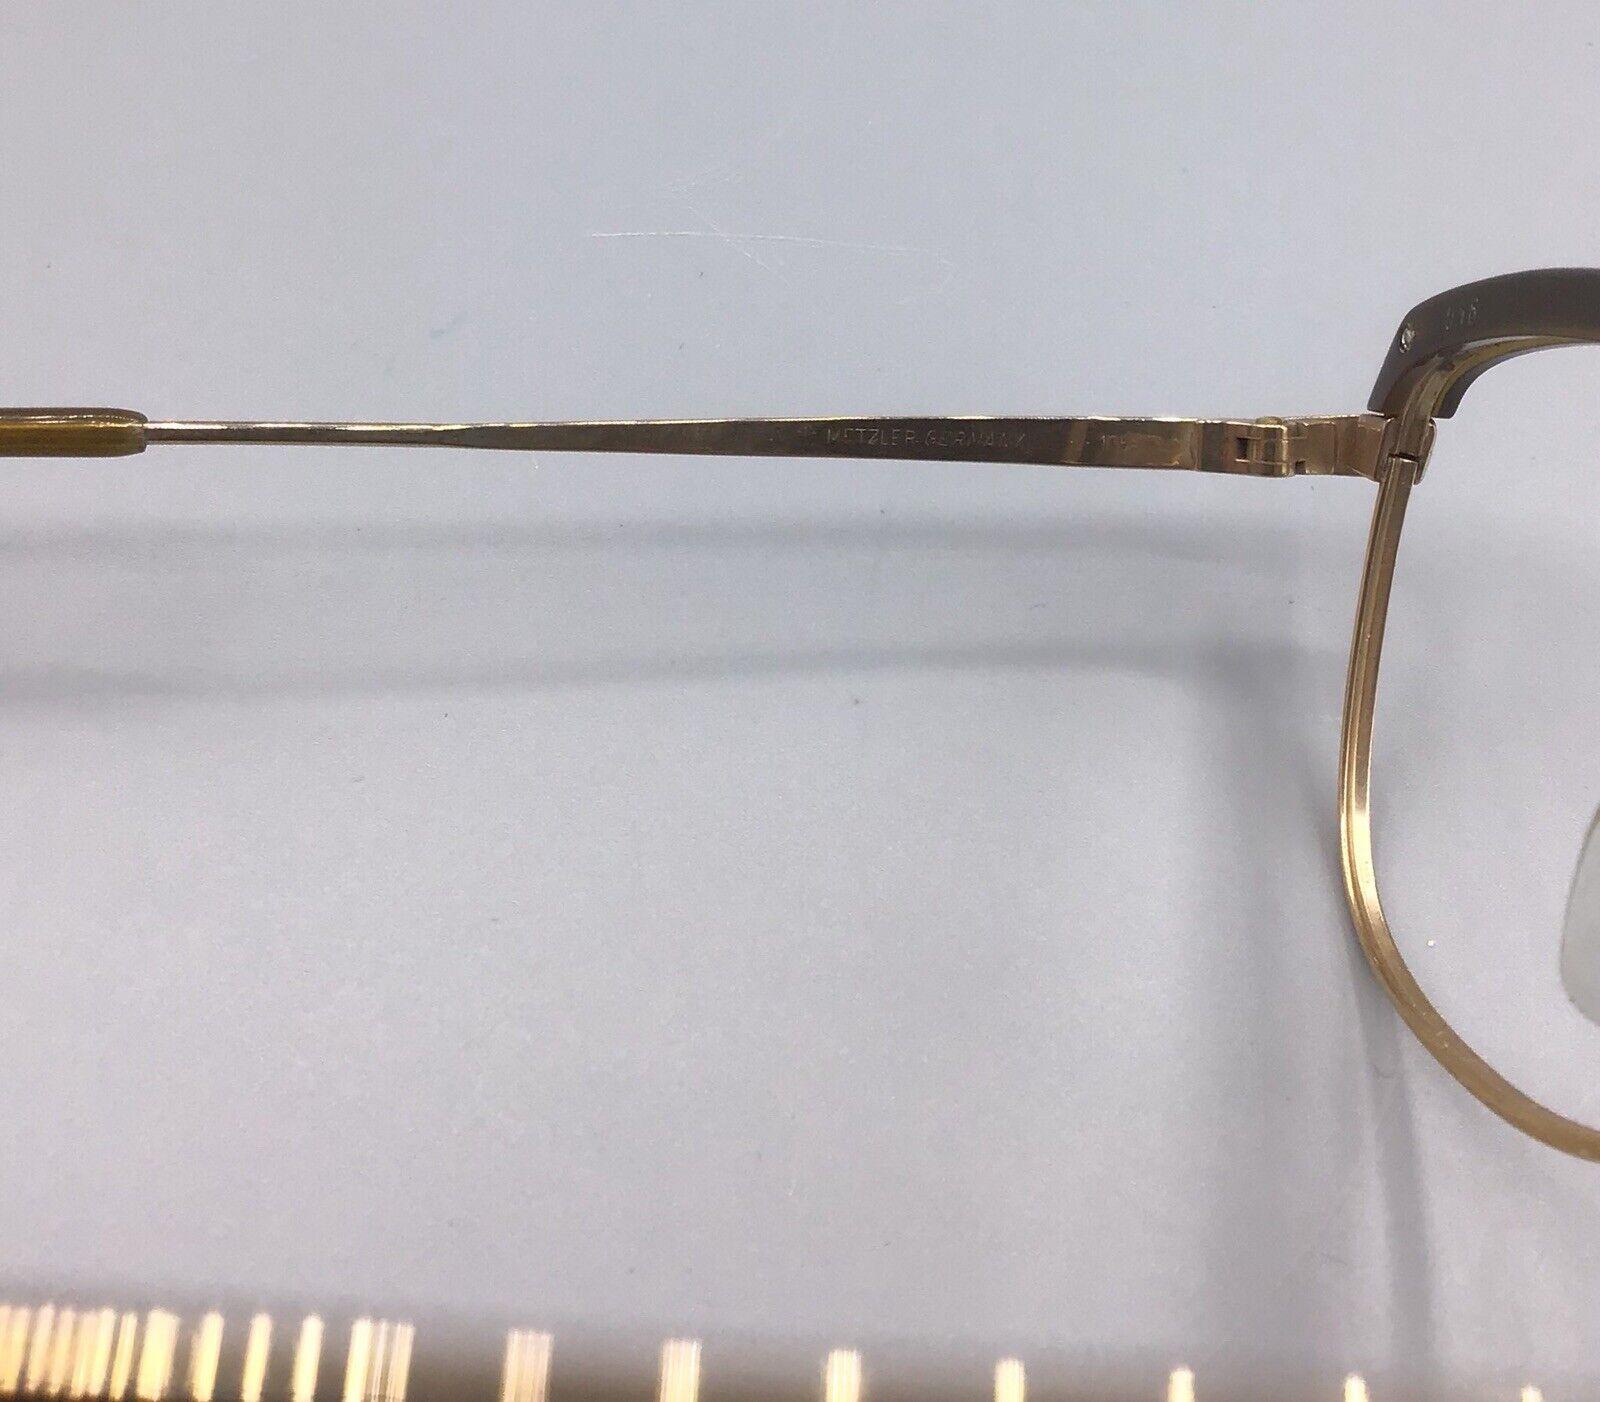 Metzler Germany brillen occhiale eyewear frame brillen lunettes 7160 model gold bdf